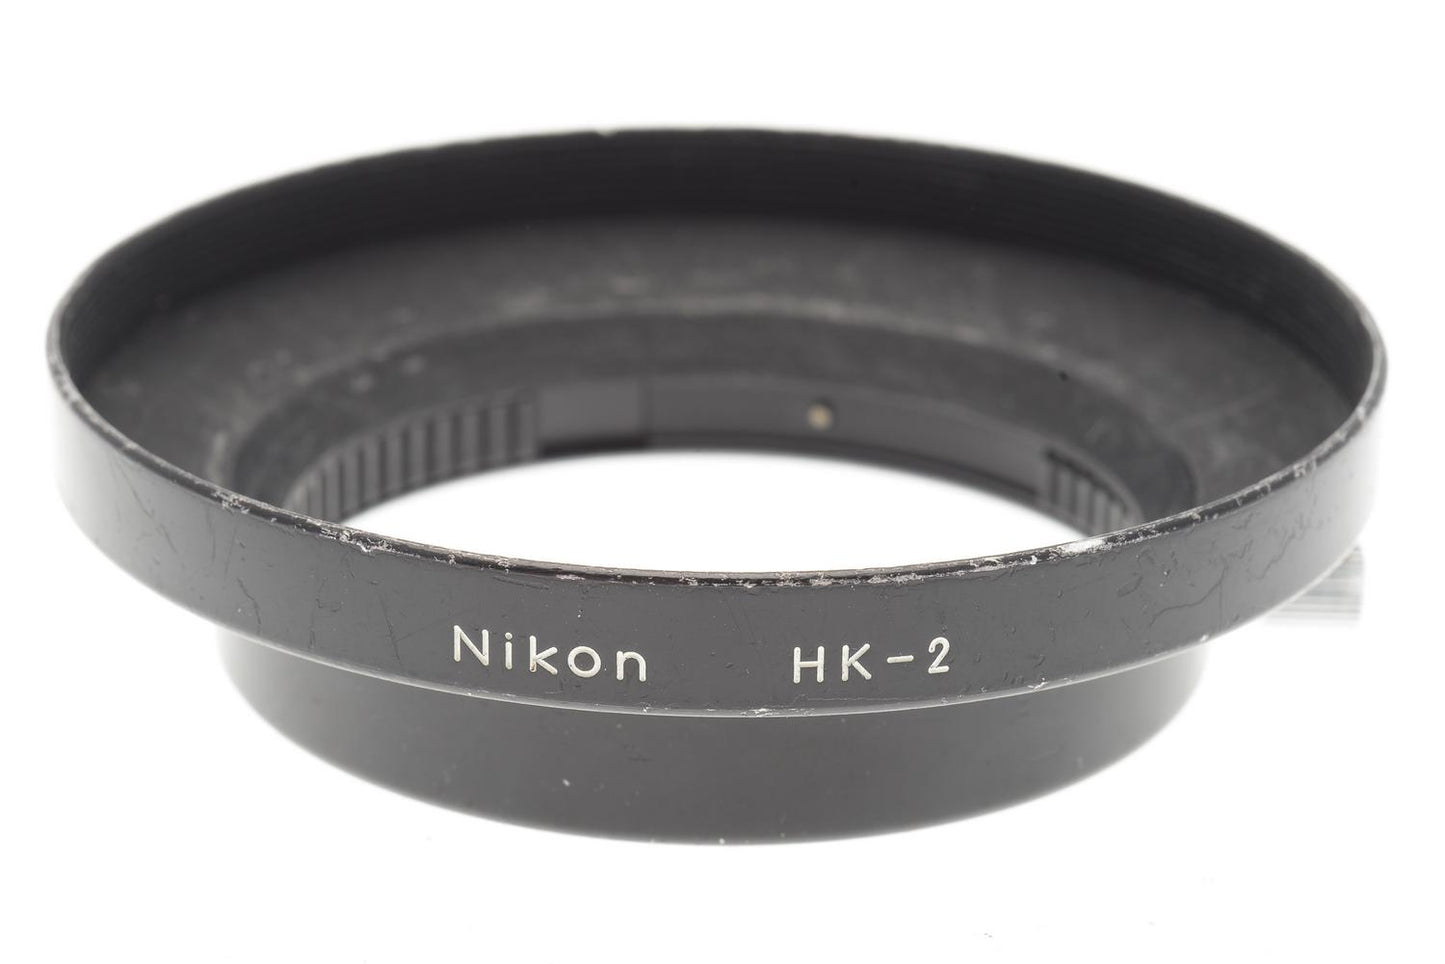 Nikon HK-2 Lens Hood - Accessory